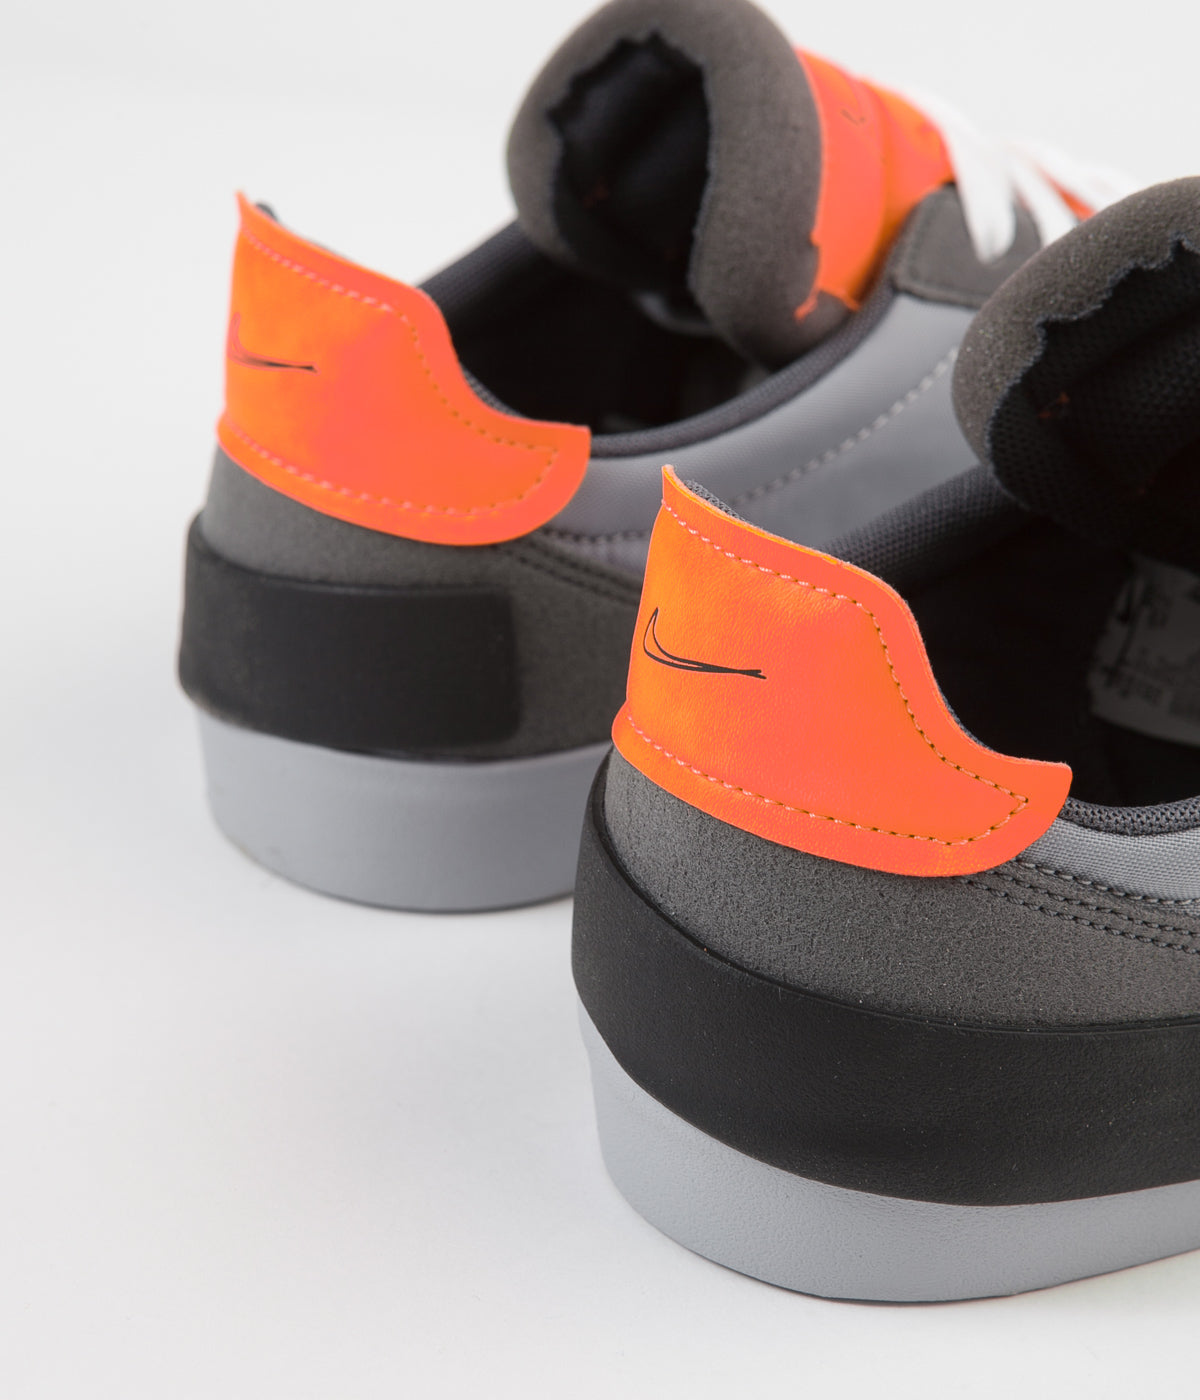 nike shoes orange and grey